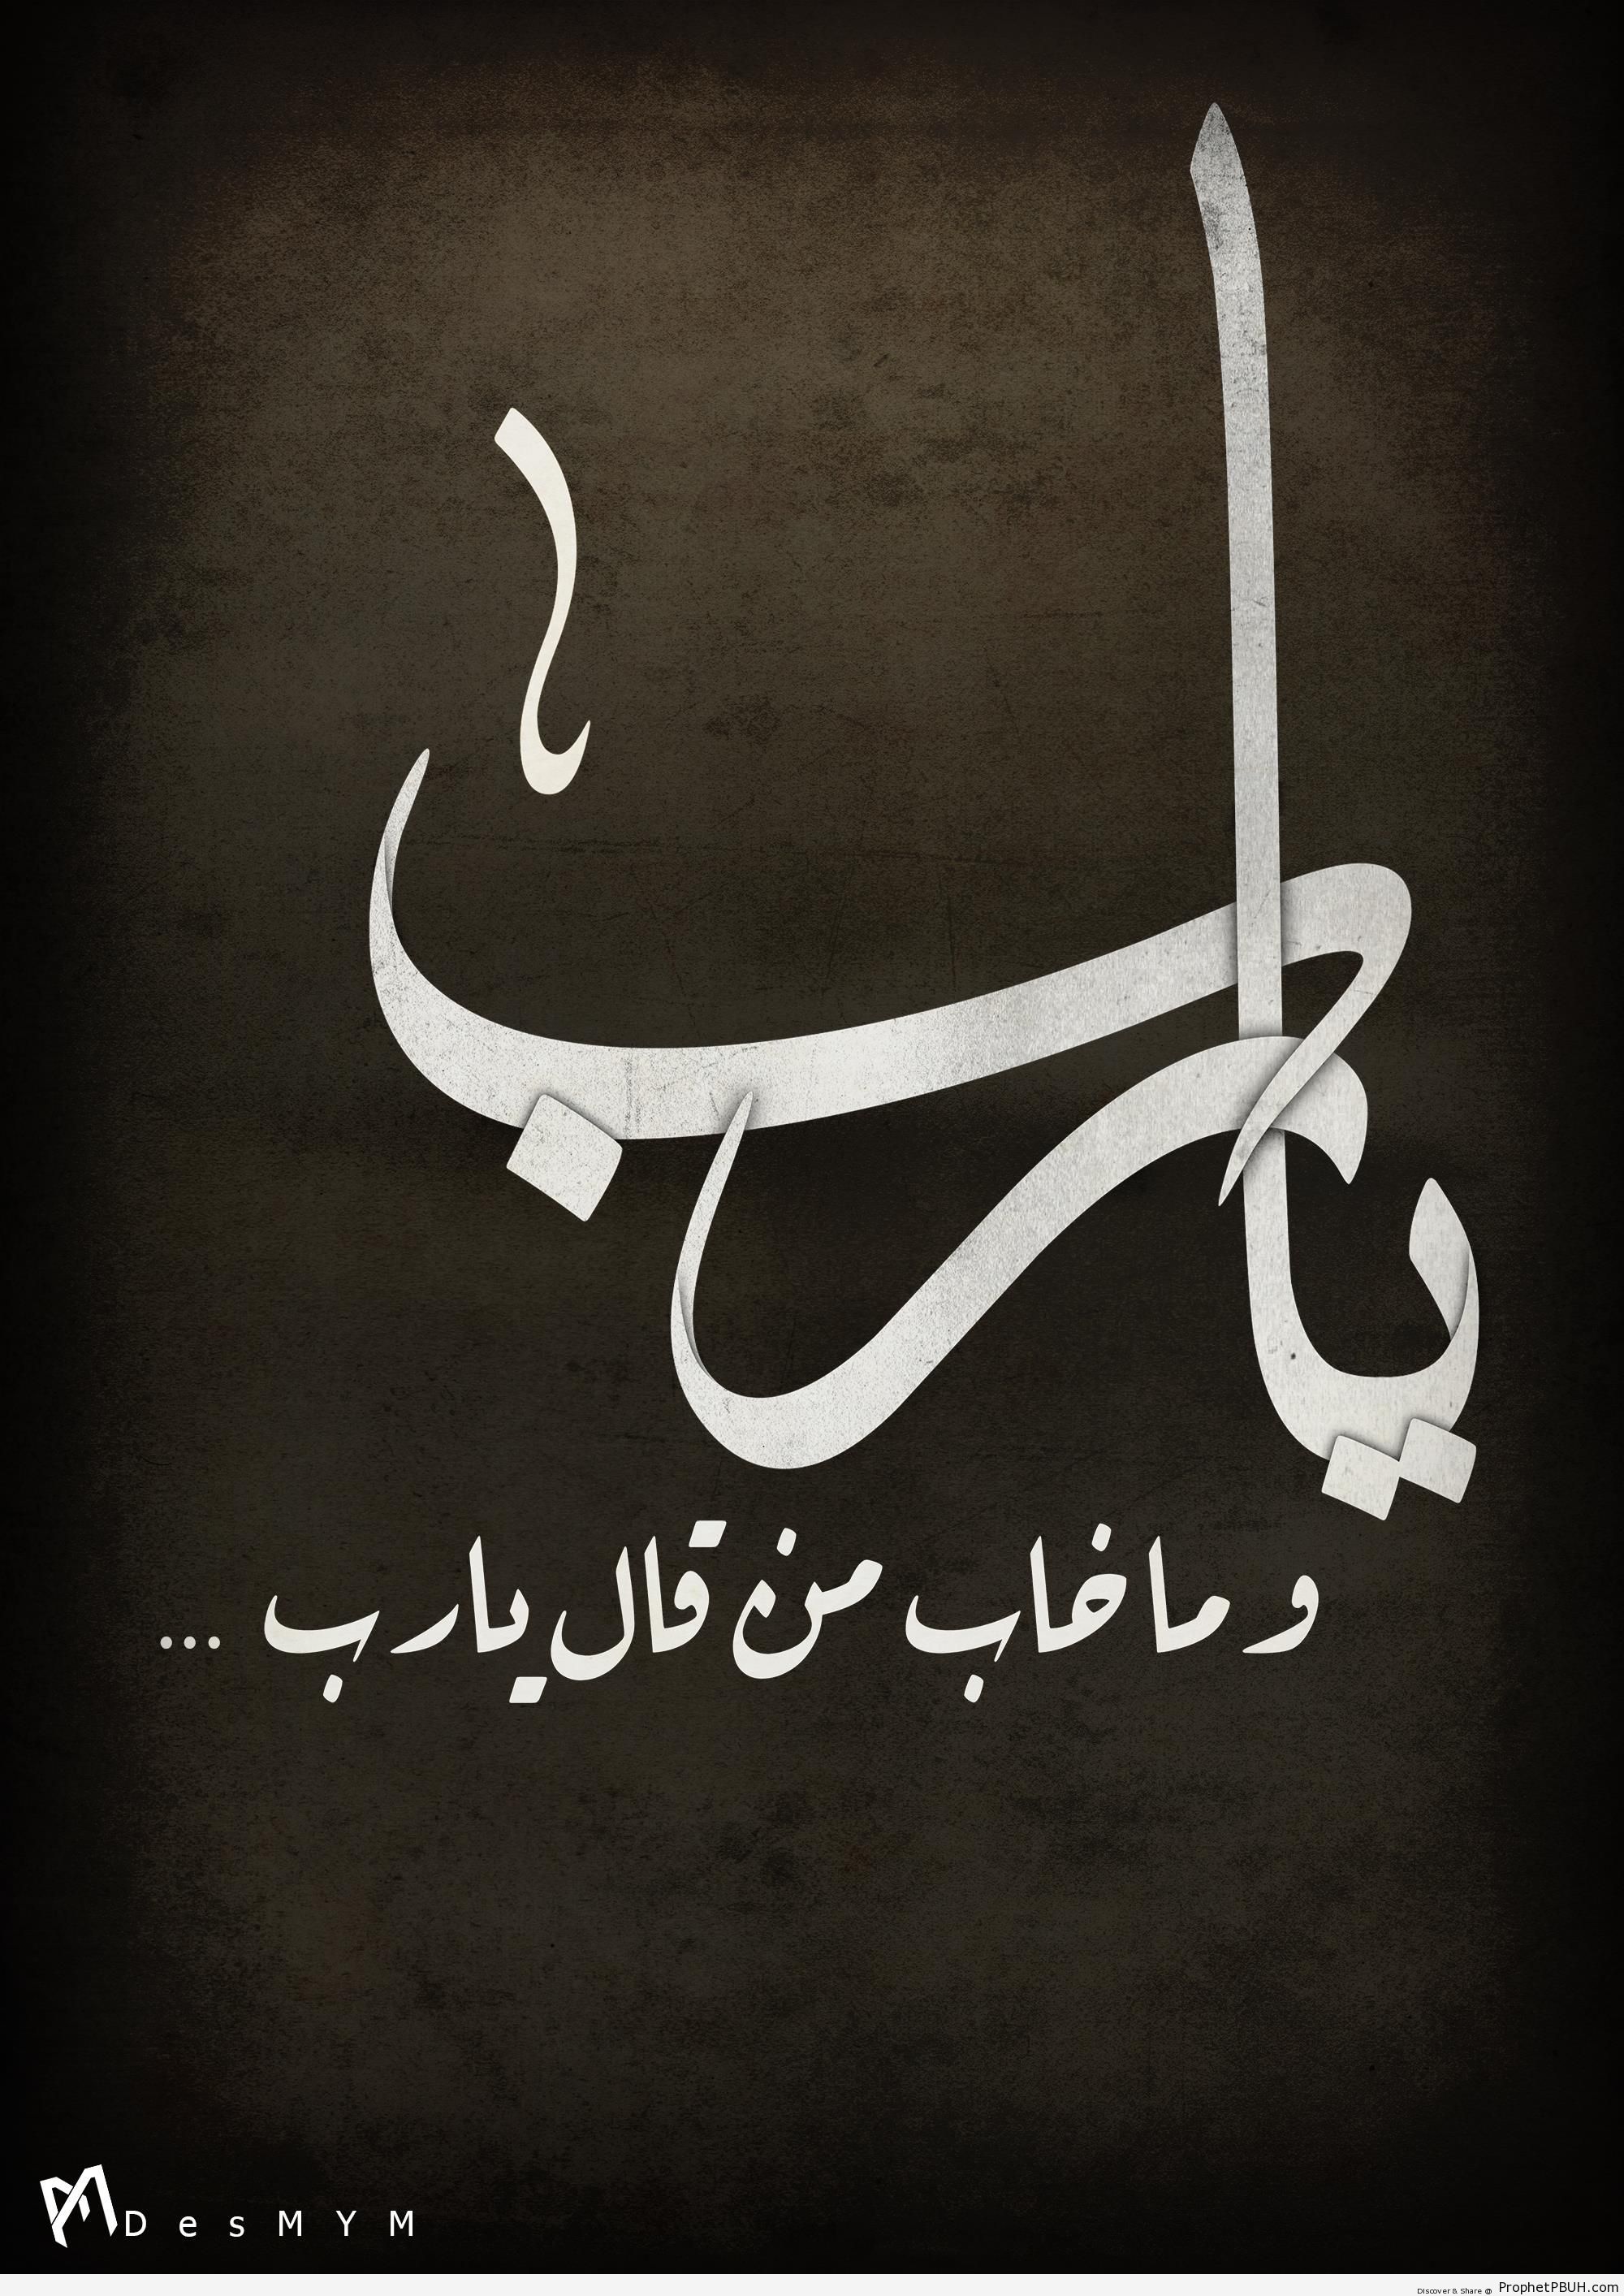 Ya Rabb Calligraphy - Islamic Calligraphy and Typography 